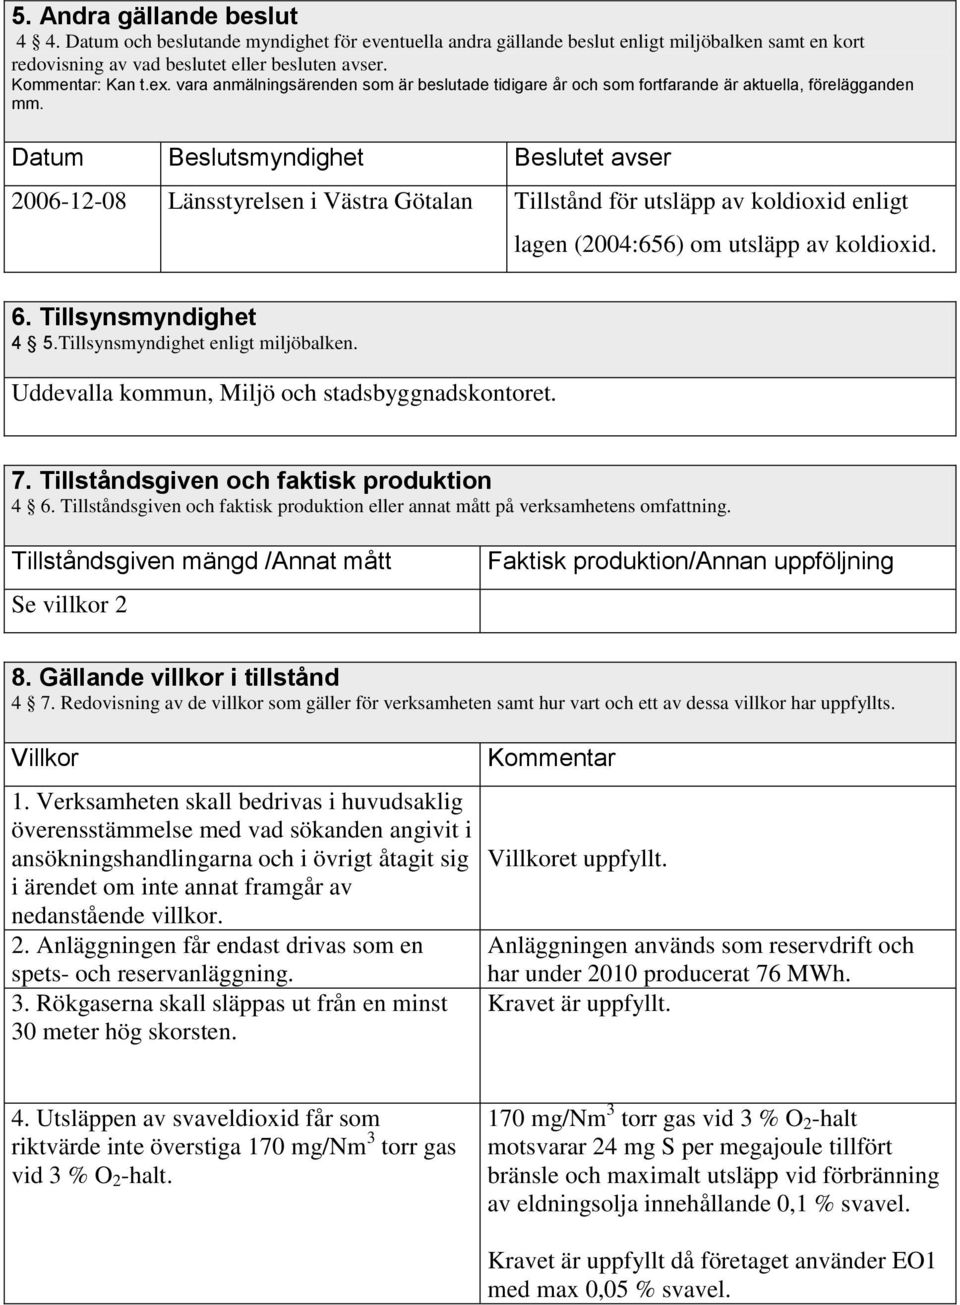 Datum Beslutsmyndighet Beslutet avser 2006-12-08 Länsstyrelsen i Västra Götalan Tillstånd för utsläpp av koldioxid enligt lagen (2004:656) om utsläpp av koldioxid. 6. Tillsynsmyndighet 4 5.